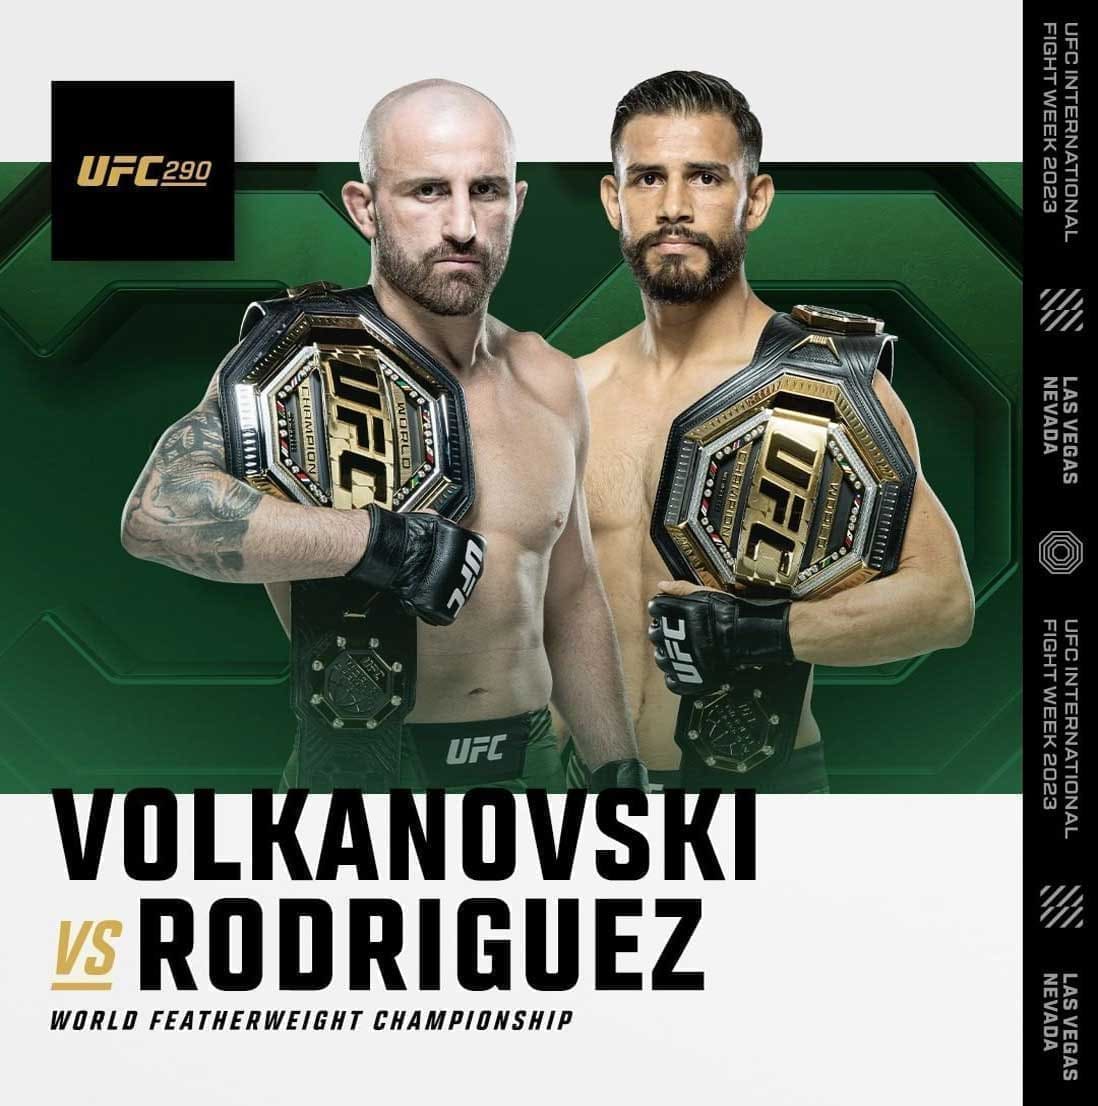 UFC 290: Волкановски - Родригес дата проведения, кард, участники и результаты